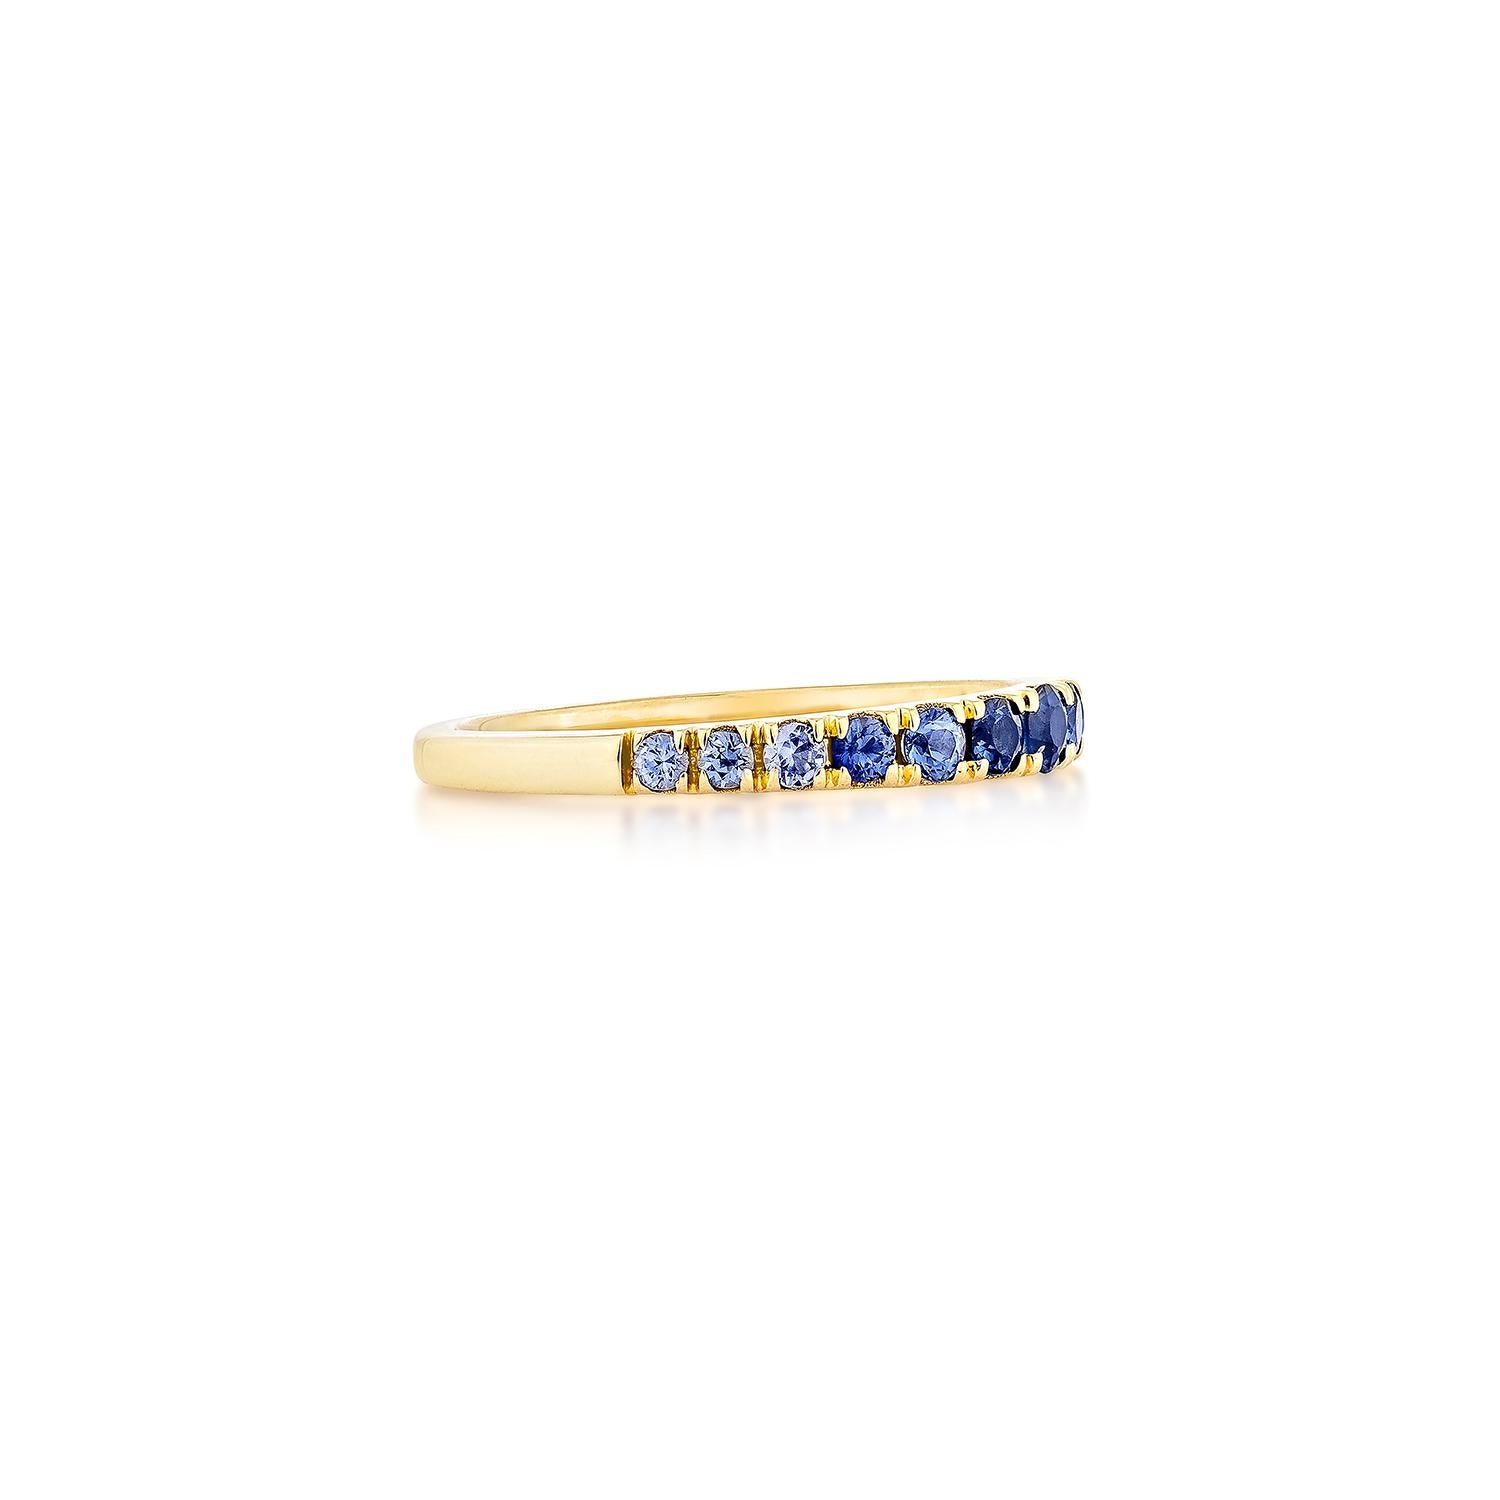 Erhöhen Sie Ihren Stil mit unserem stapelbaren Ring mit blauem Saphir, der mit einem schillernden blauen Saphir in 14 Karat Gelbgold geschmückt ist. Dieser zarte und doch bezaubernde Ring verleiht jedem Look einen Hauch von Eleganz, ob allein